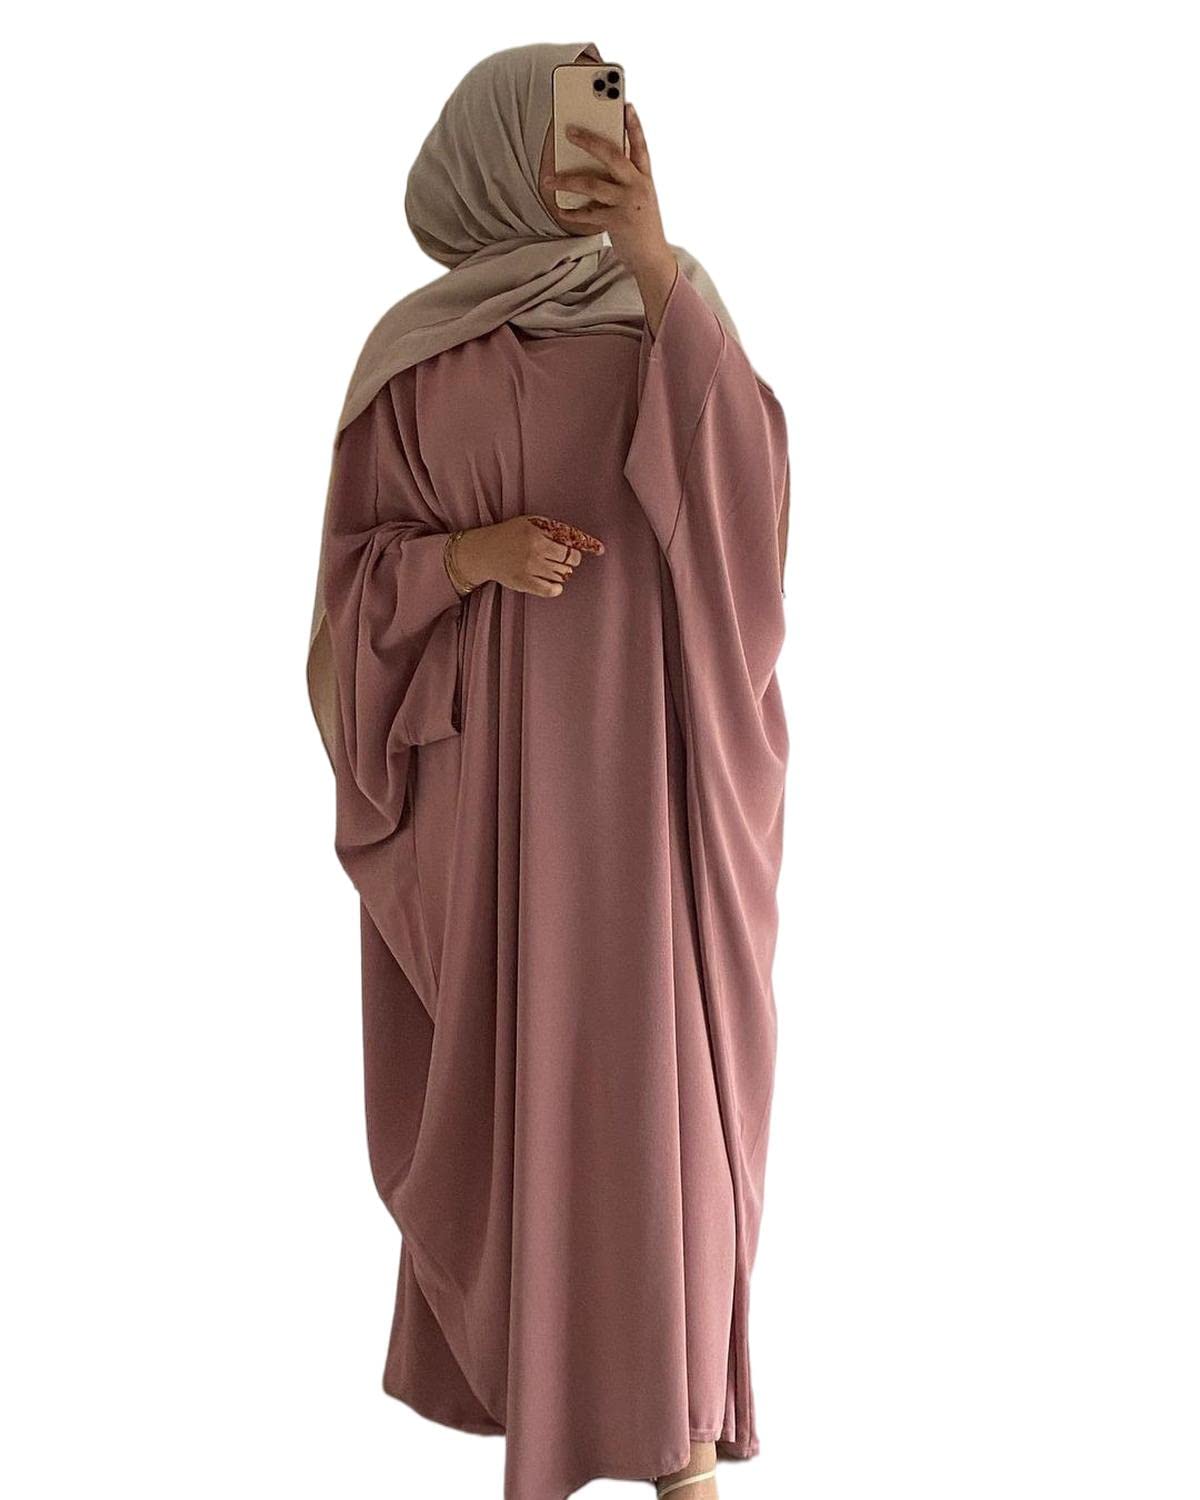 RUIG Damen Kleid Muslimische Gebet Abaya Islamische Robe Maxi Afrikanischer Kaftan Türkei Islam Dubai Türkei Kleid in voller Länge ohne Hijab, Rosa Ohne Hijab, Einheitsgröße